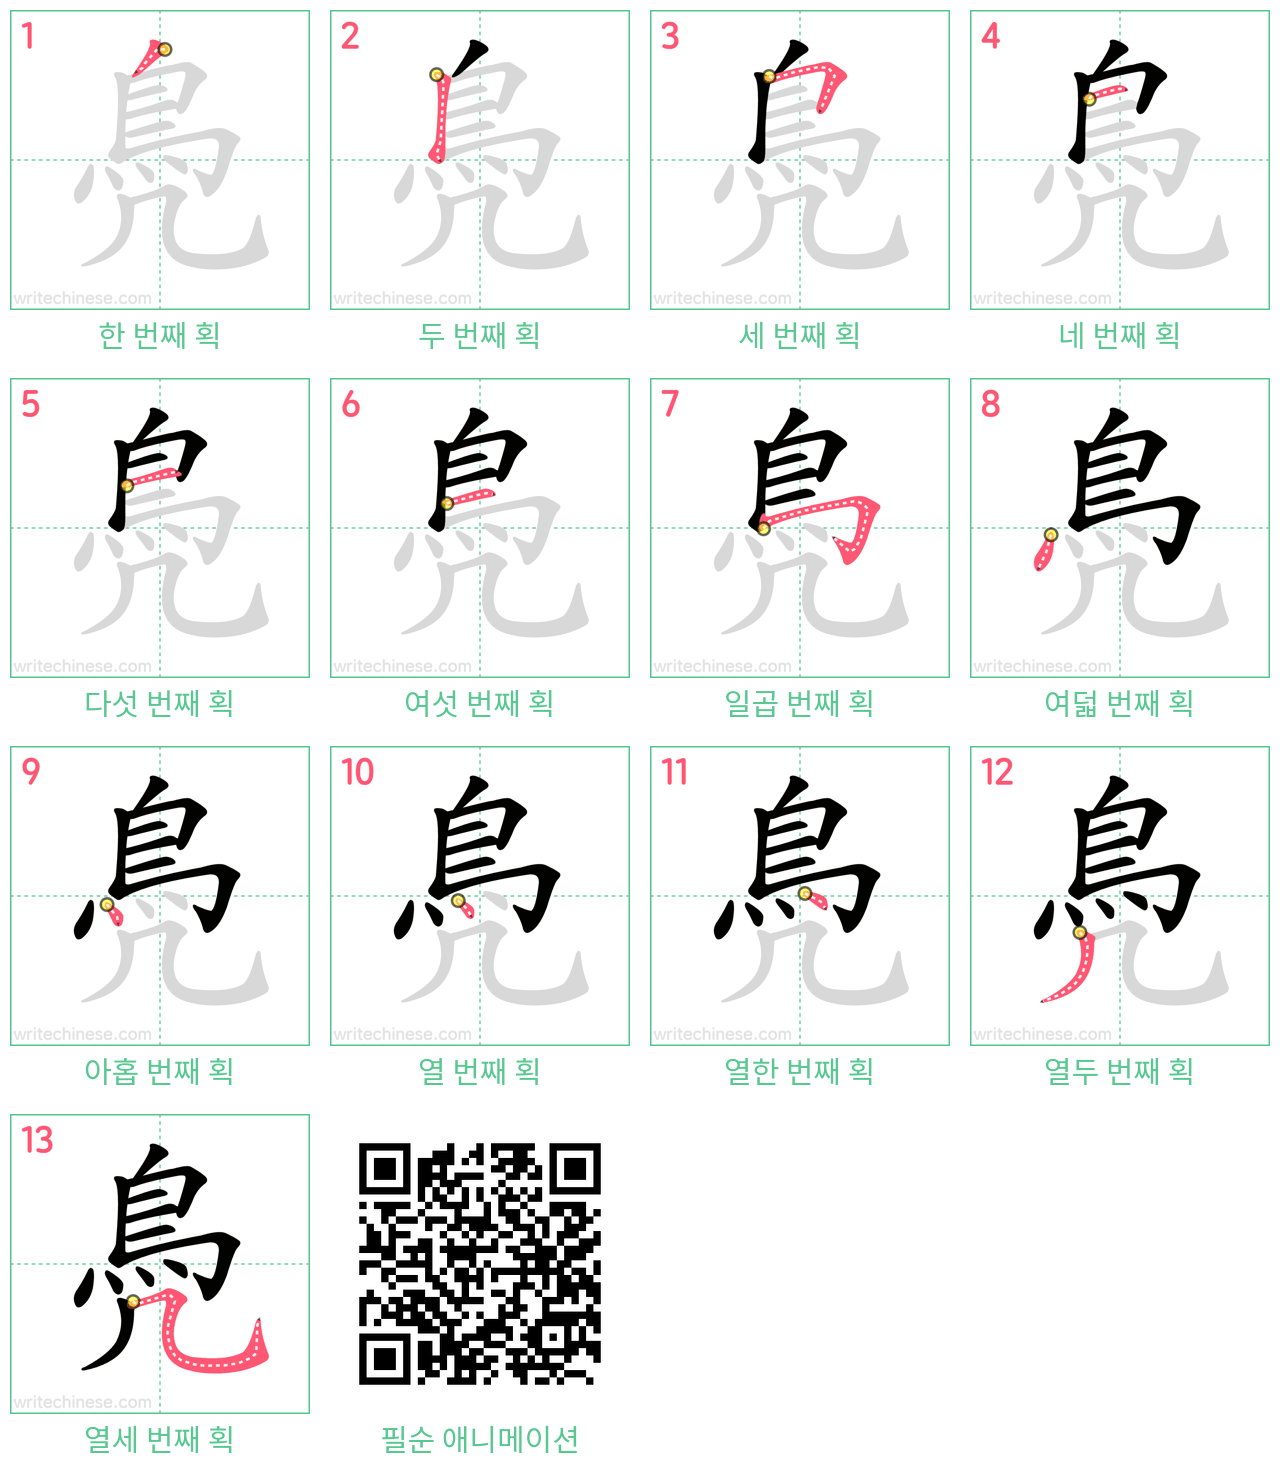 鳧 step-by-step stroke order diagrams